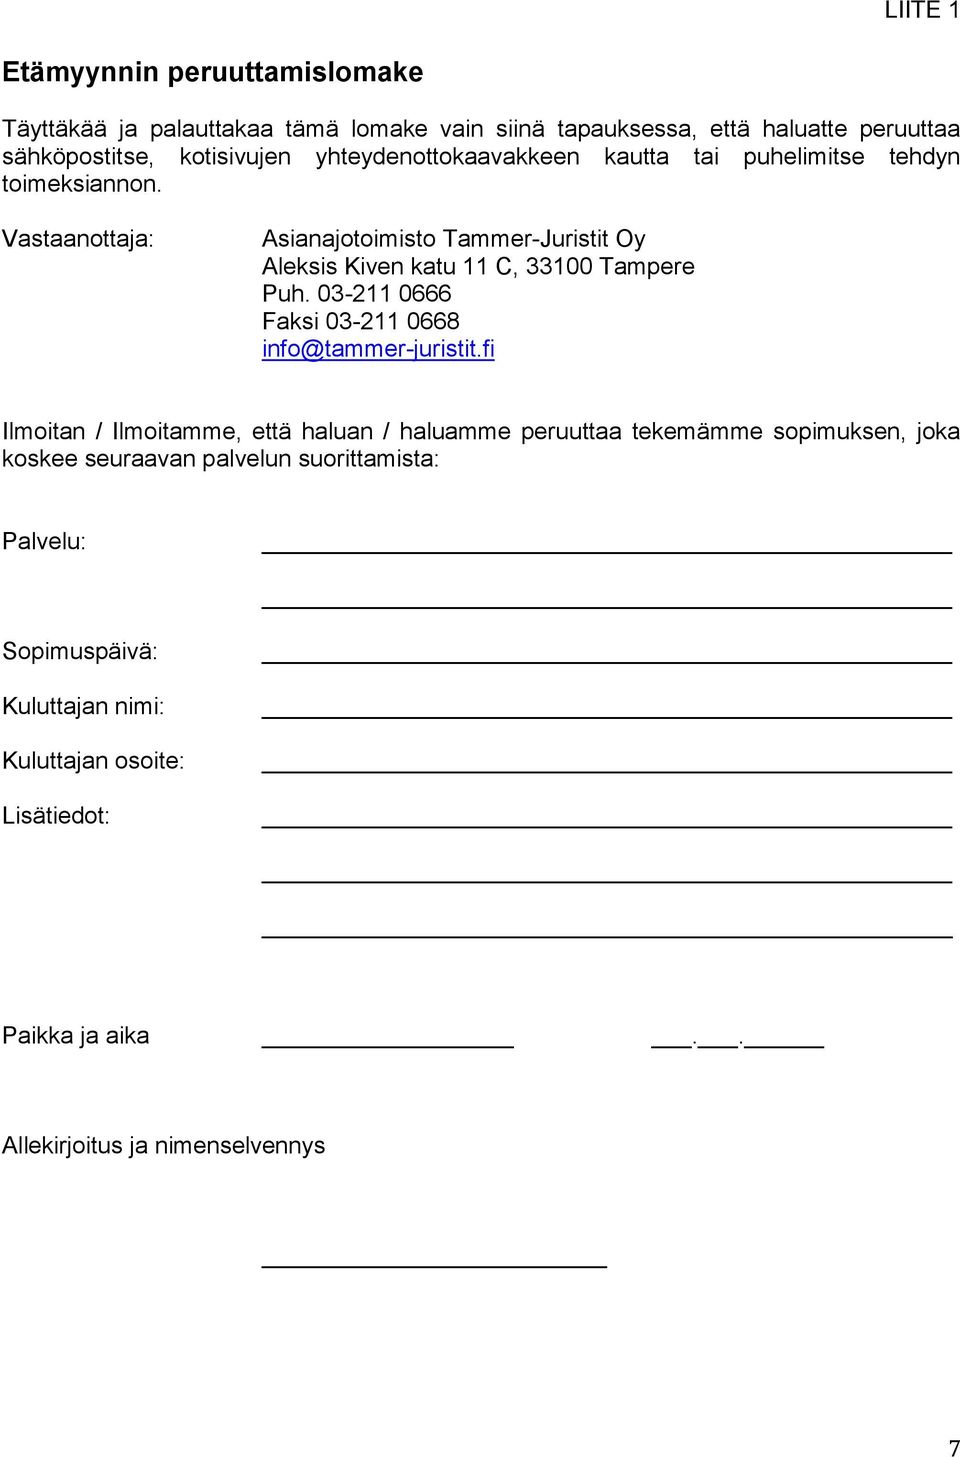 Vastaanottaja: Asianajotoimisto Tammer-Juristit Oy Aleksis Kiven katu 11 C, 33100 Tampere Puh. 03-211 0666 Faksi 03-211 0668 info@tammer-juristit.